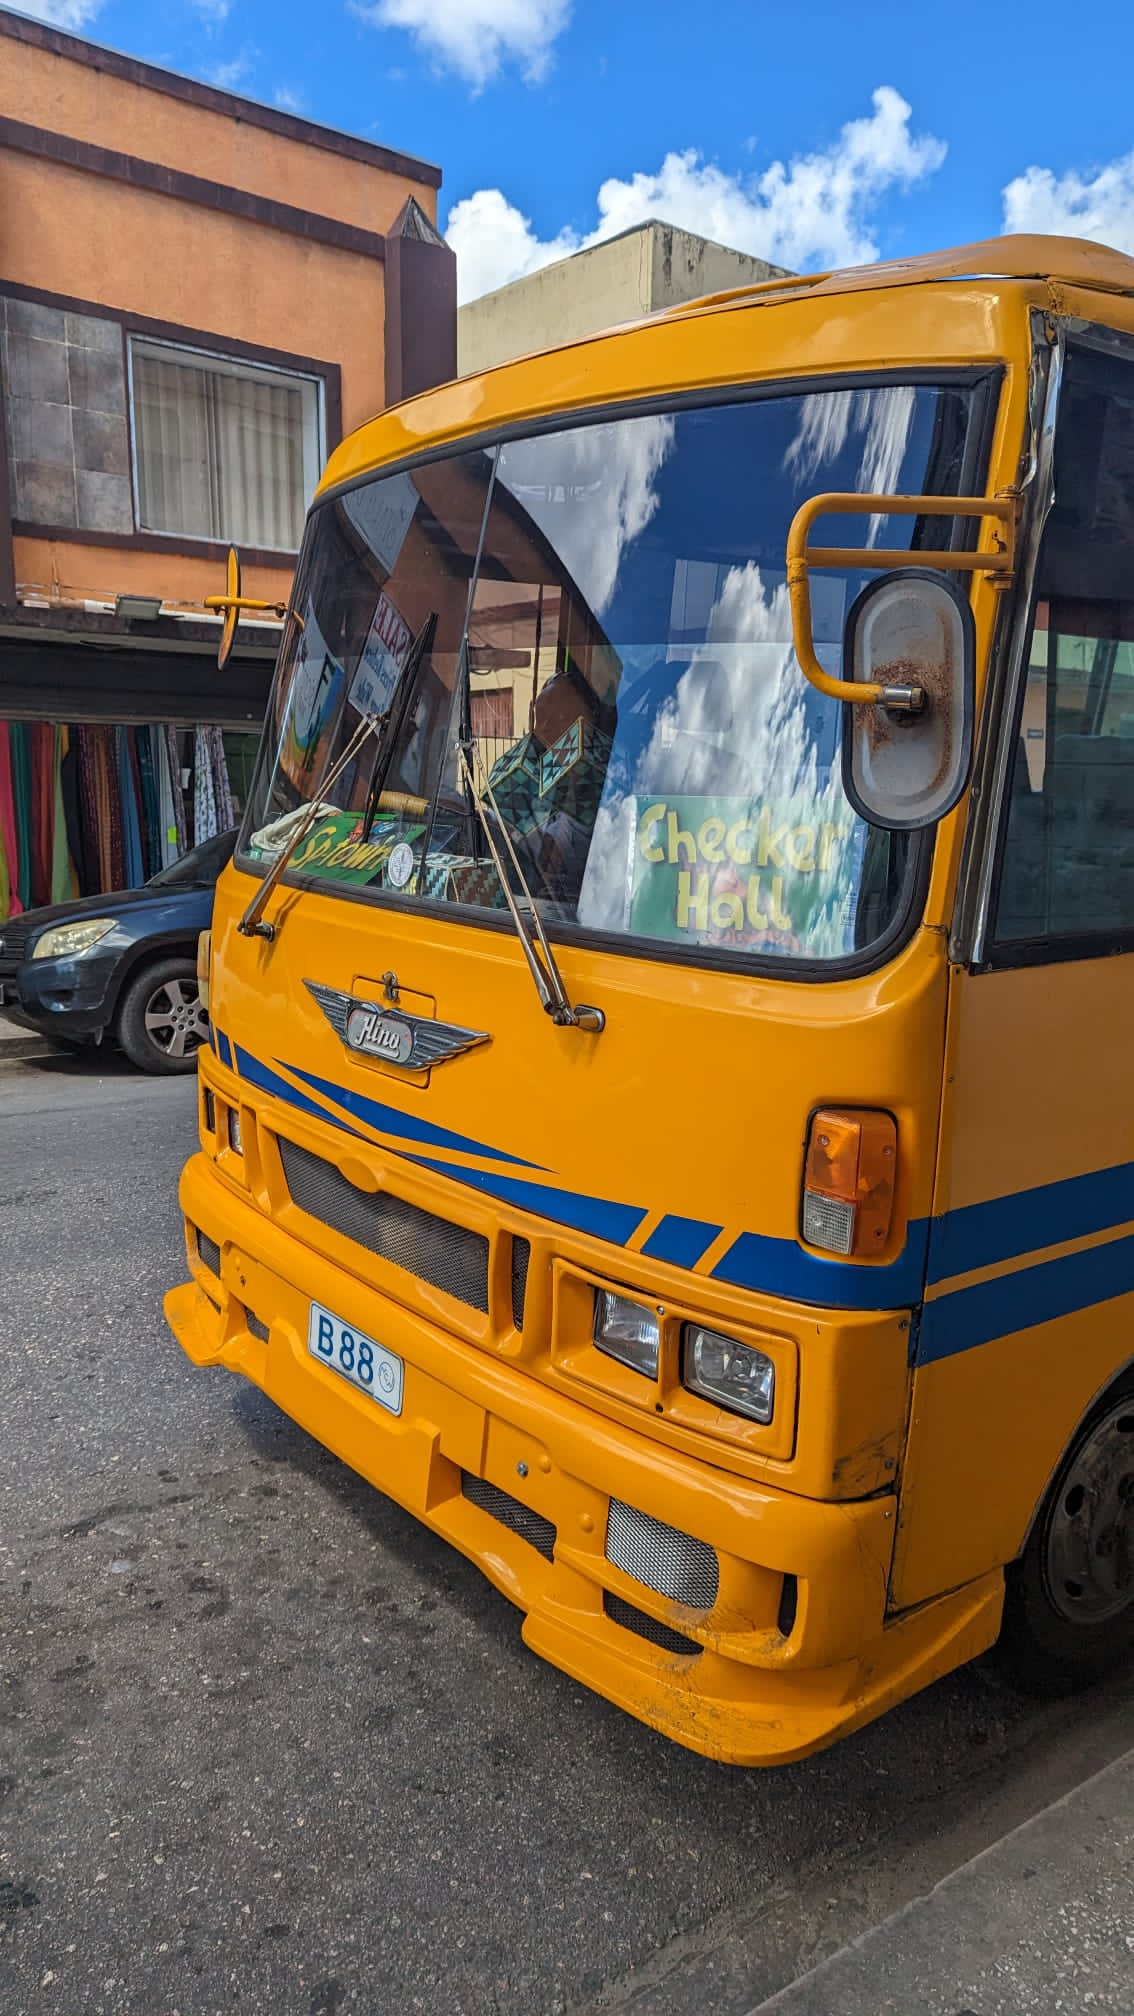 Einer der typischen, gelben Busse auf Barbados